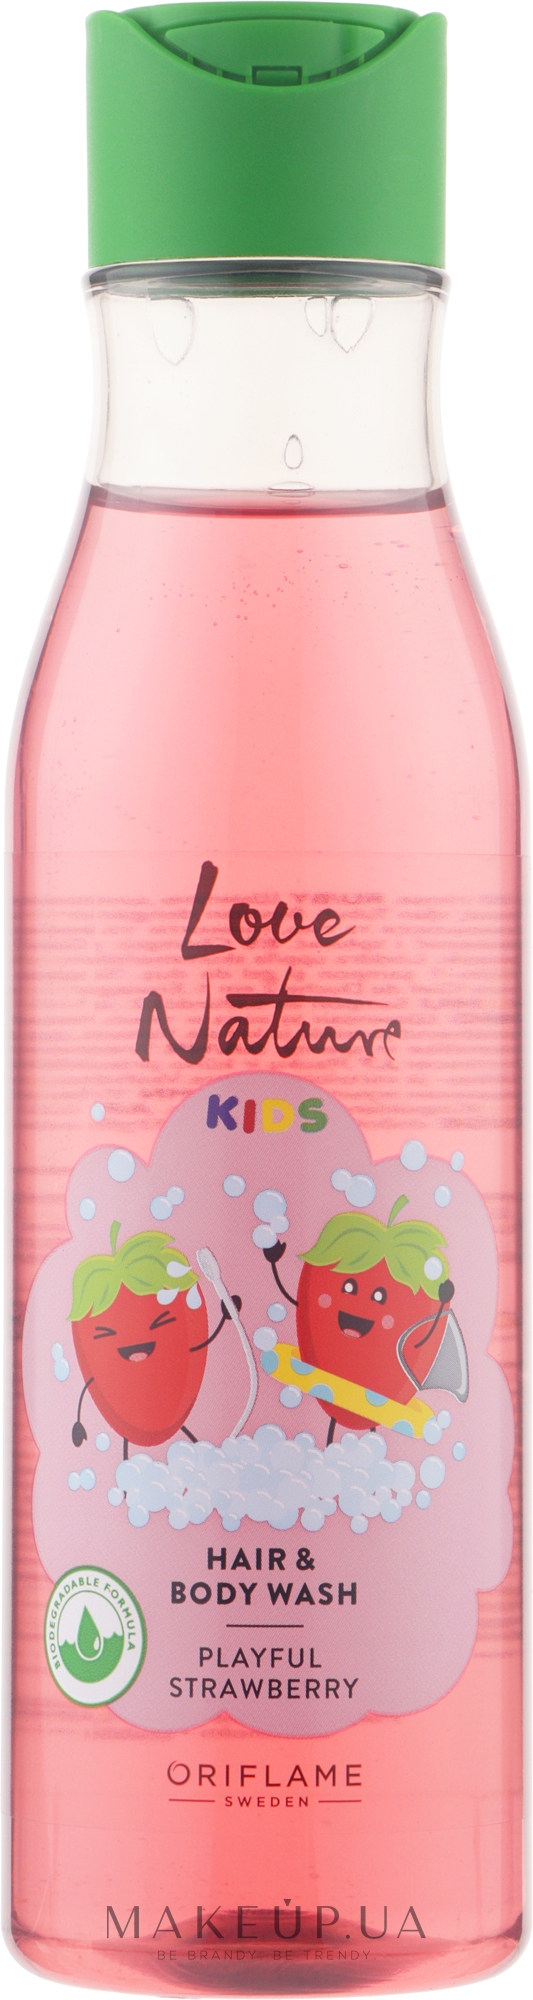 Дитячий гель для миття волосся й тіла - Oriflame Love Nature Kids Playful Strawberry Hair Body Wash — фото 250ml